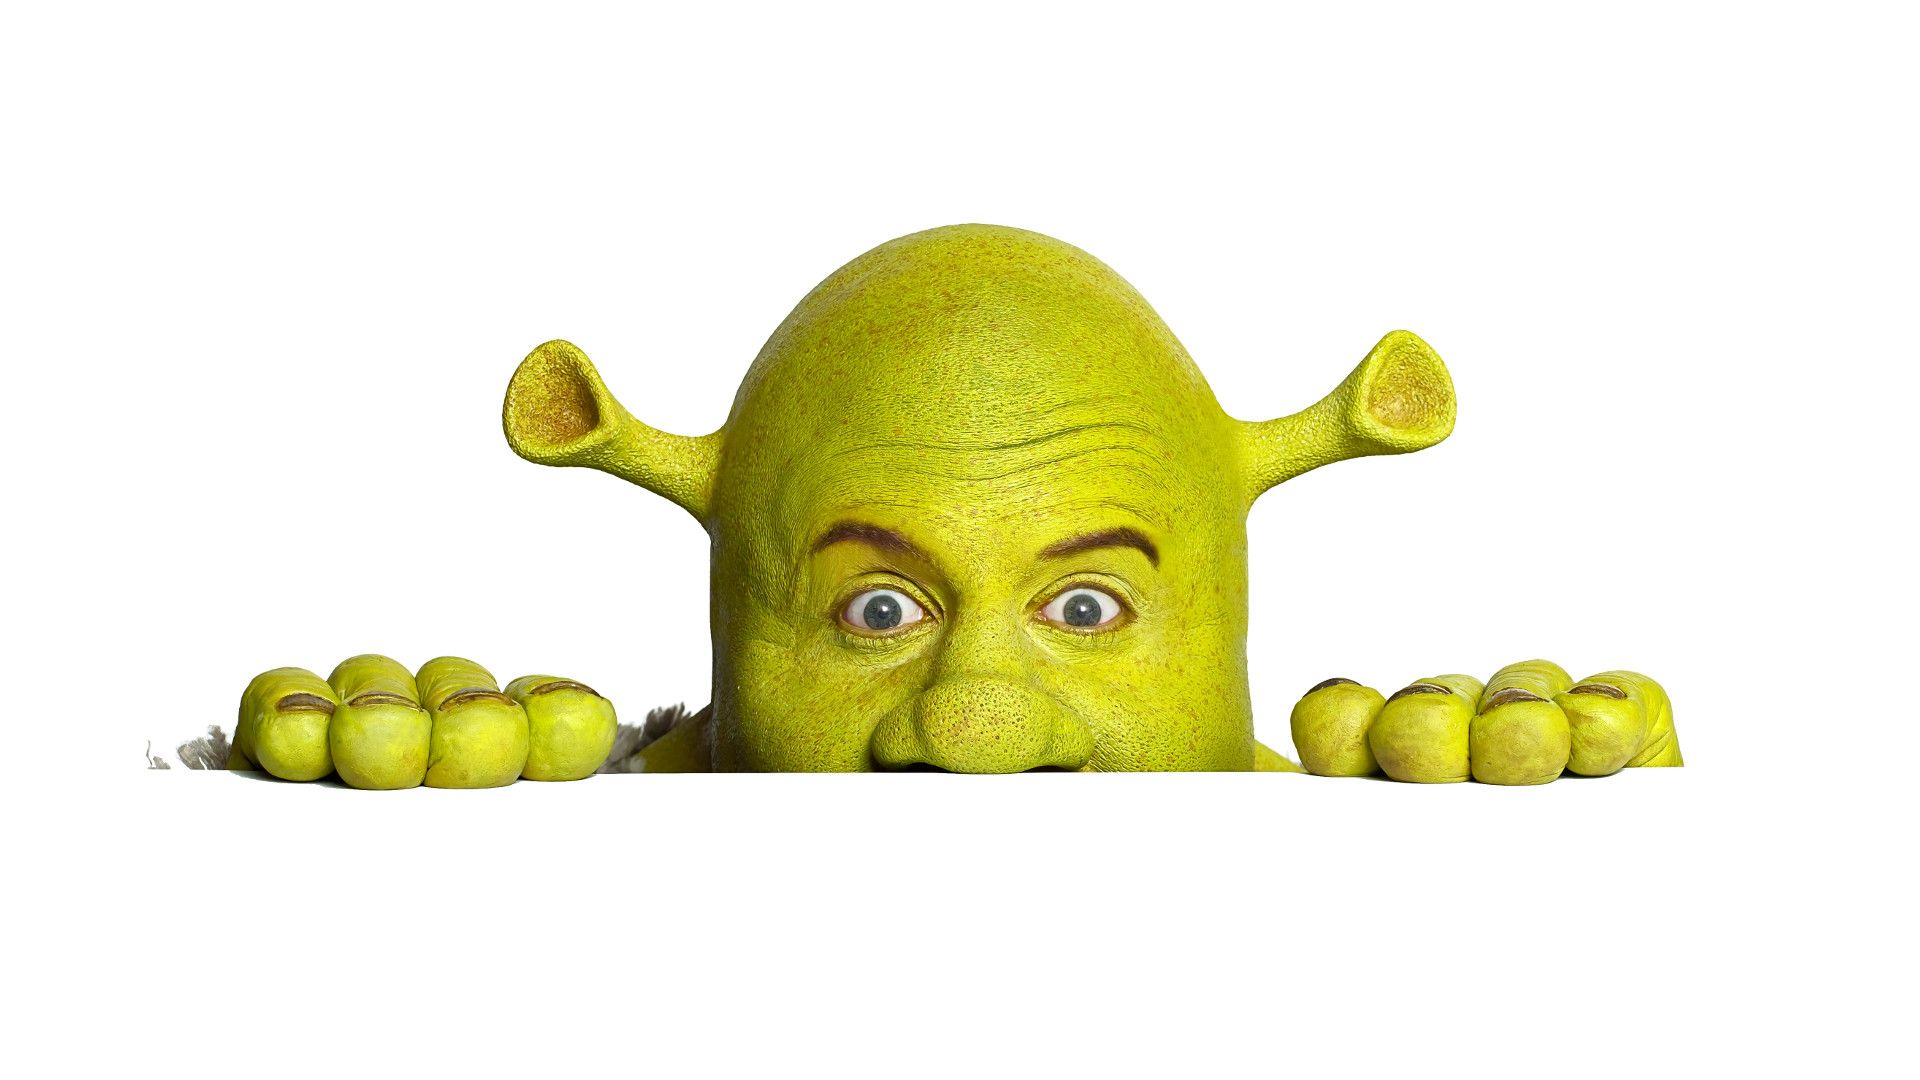 Shrek the Musical background